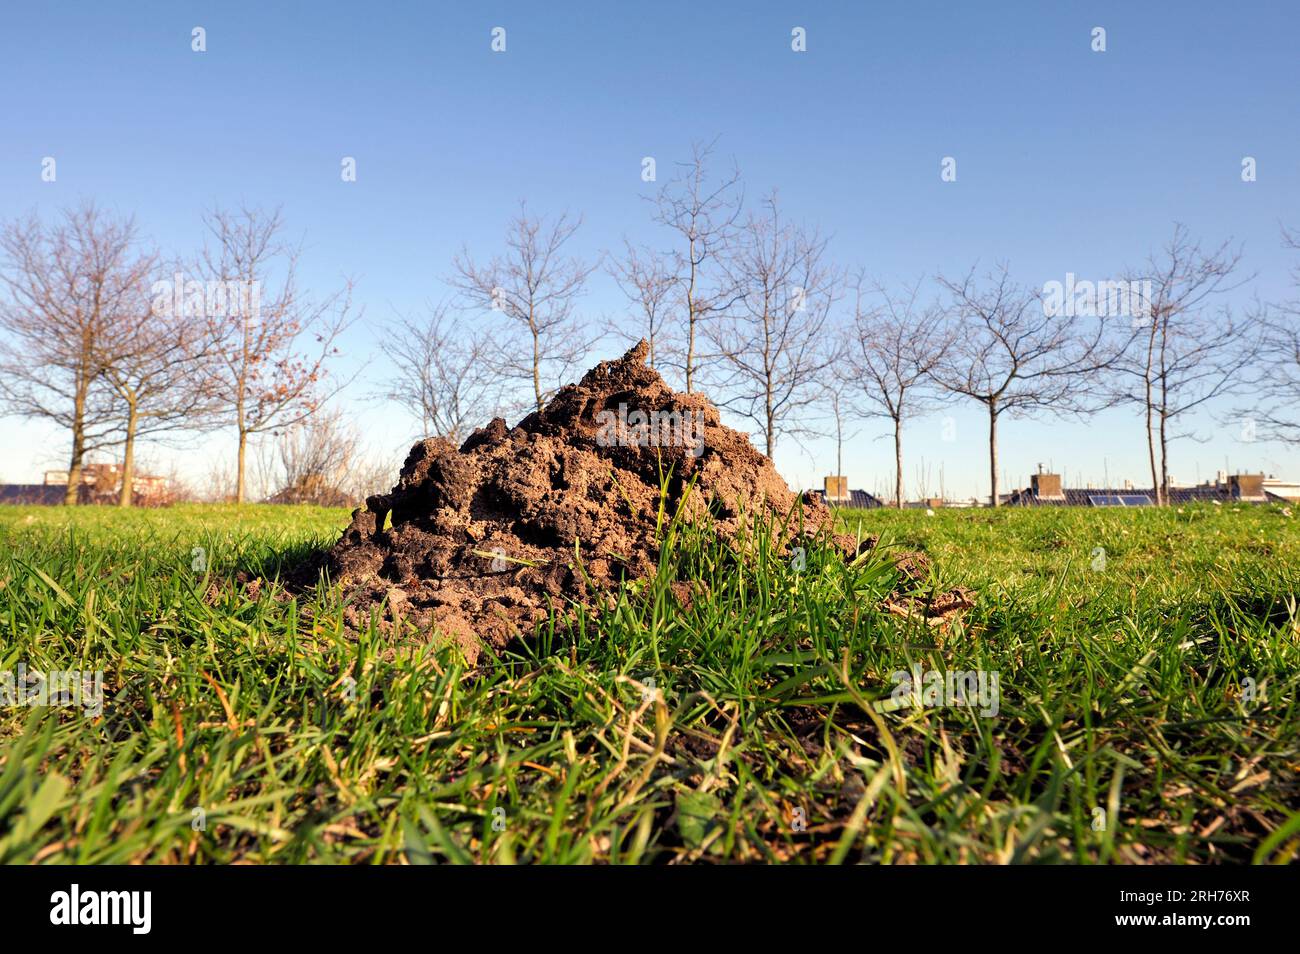 Monticules de sol ou molehill du Moyen-Orient aveugle taupe-rat dans un champ d'herbe dans un parc aux pays-Bas. Les rats taupes sont les principaux sous-marins agricoles Banque D'Images